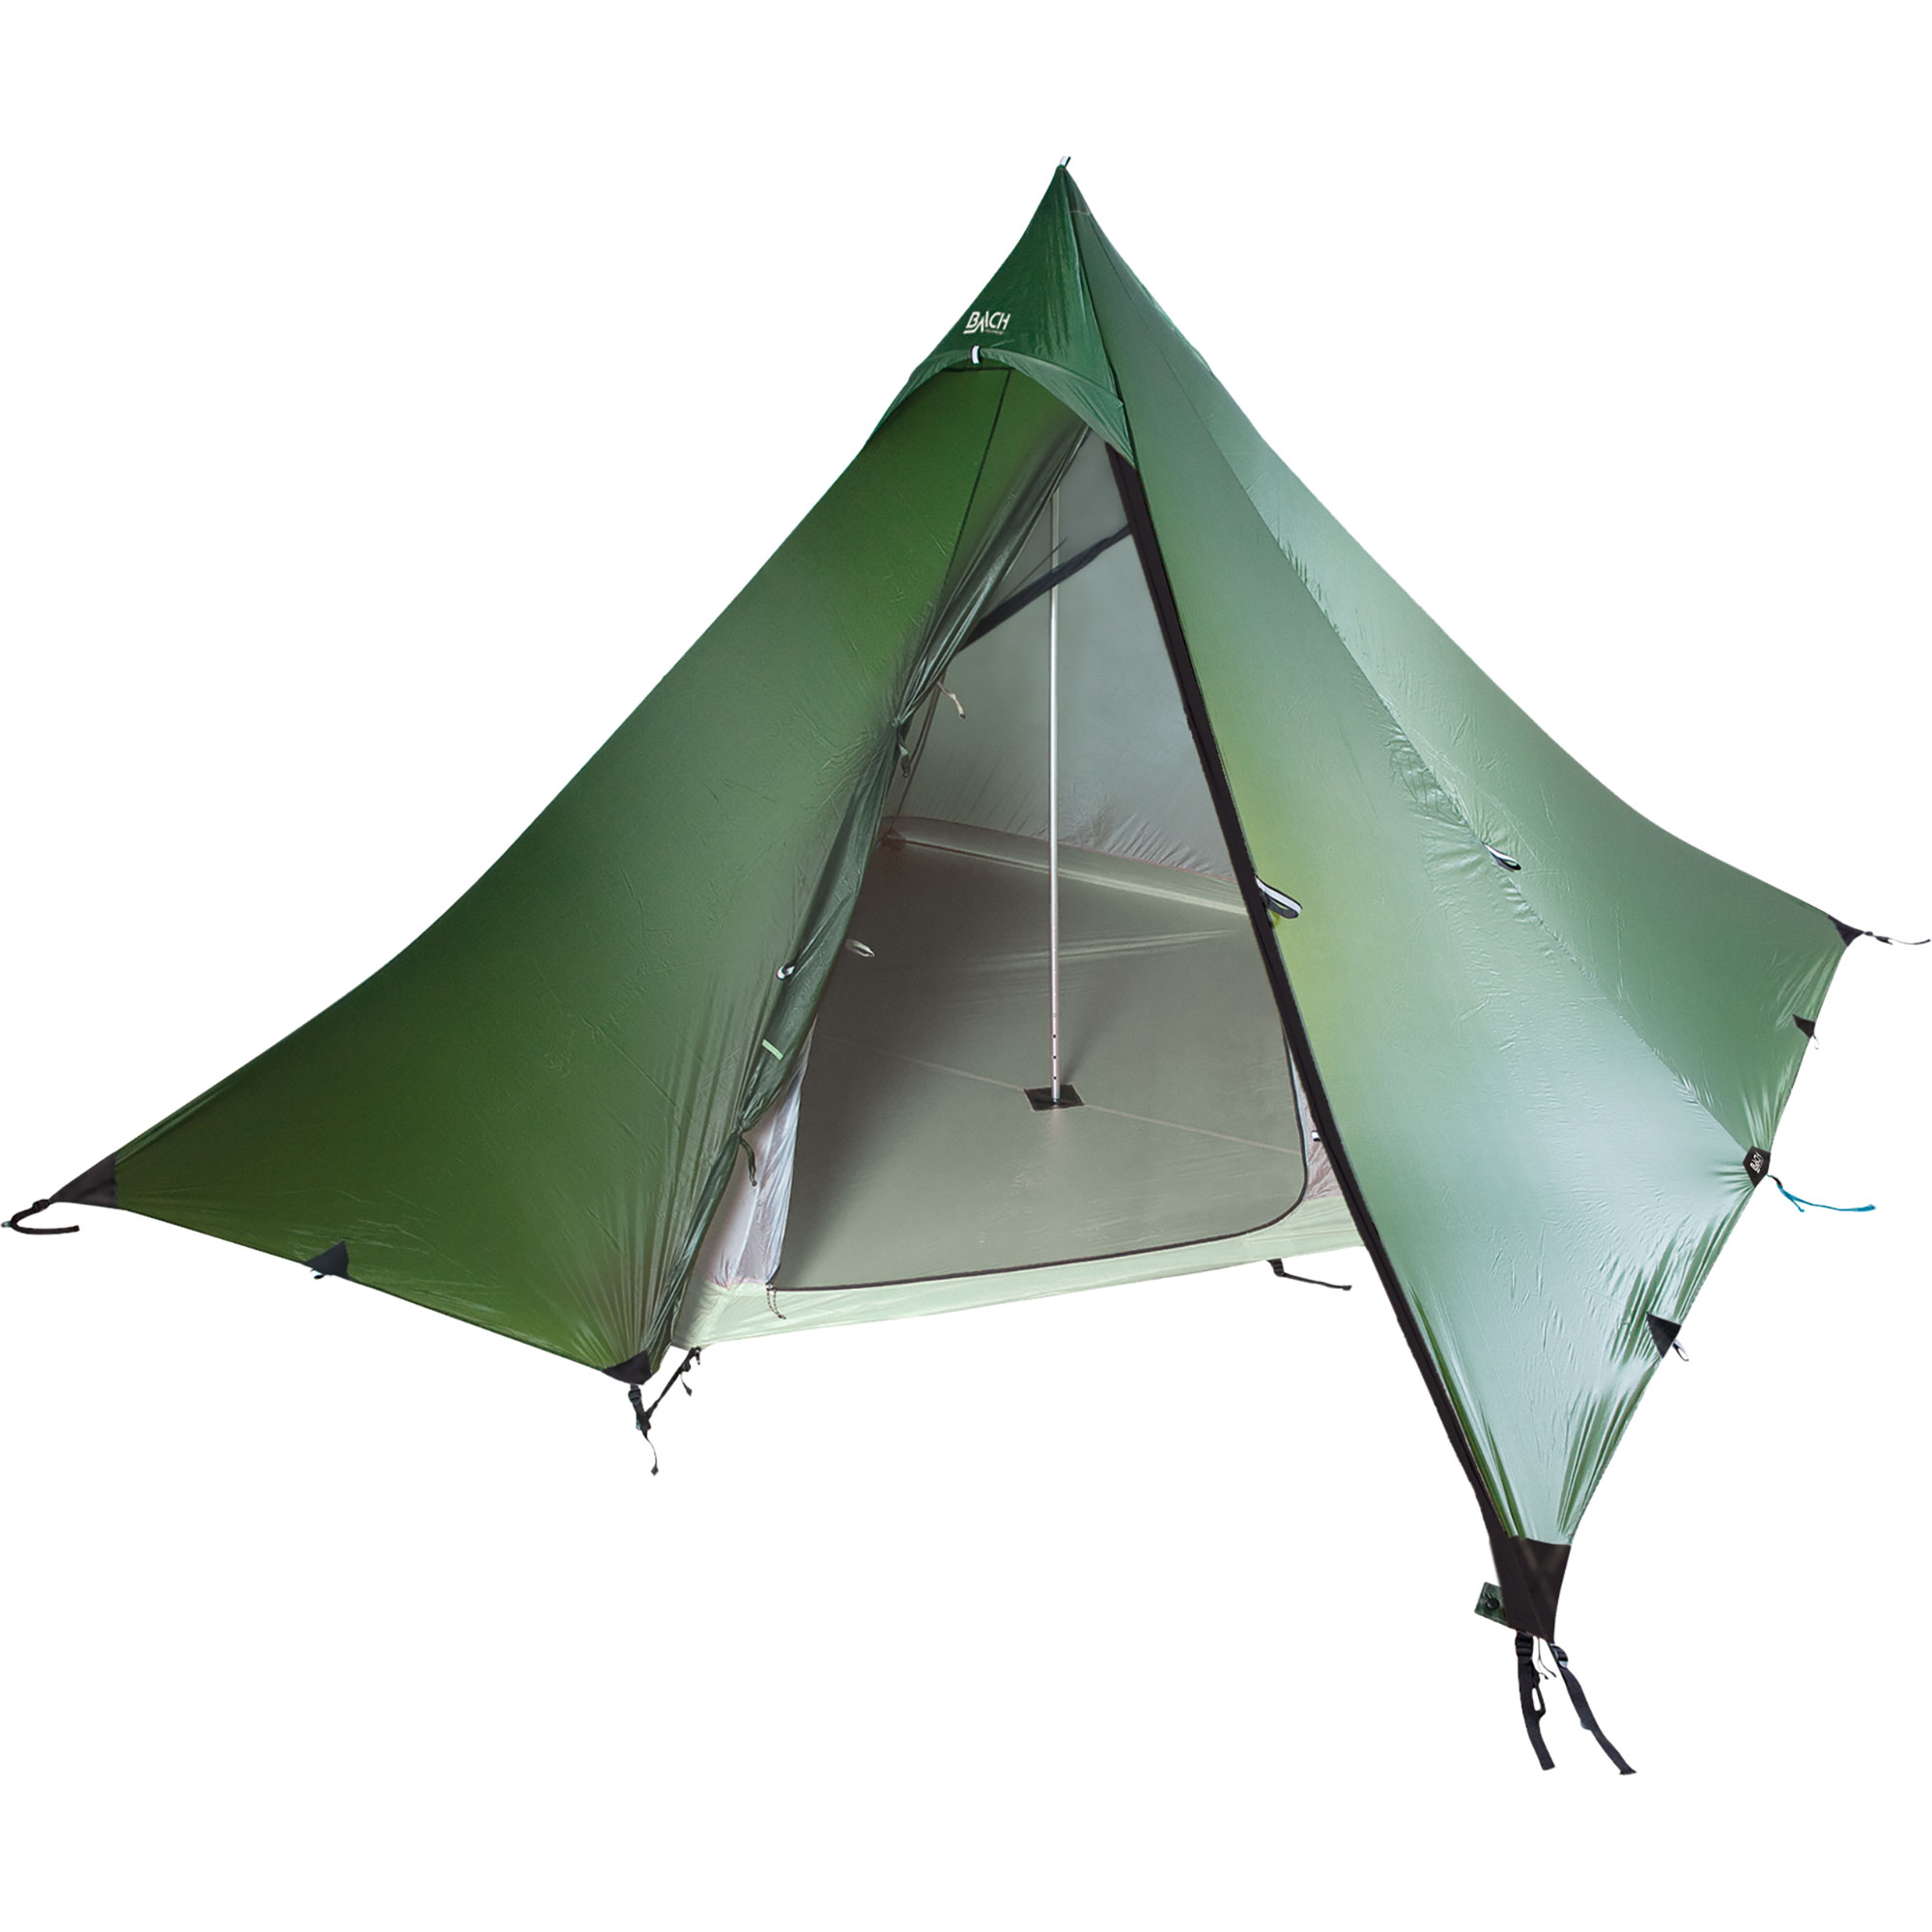 Psychologisch Wierook tarwe Bach WickiUp 4 tipi-tent | Tenten | Overnachting | Outdoor Gouda